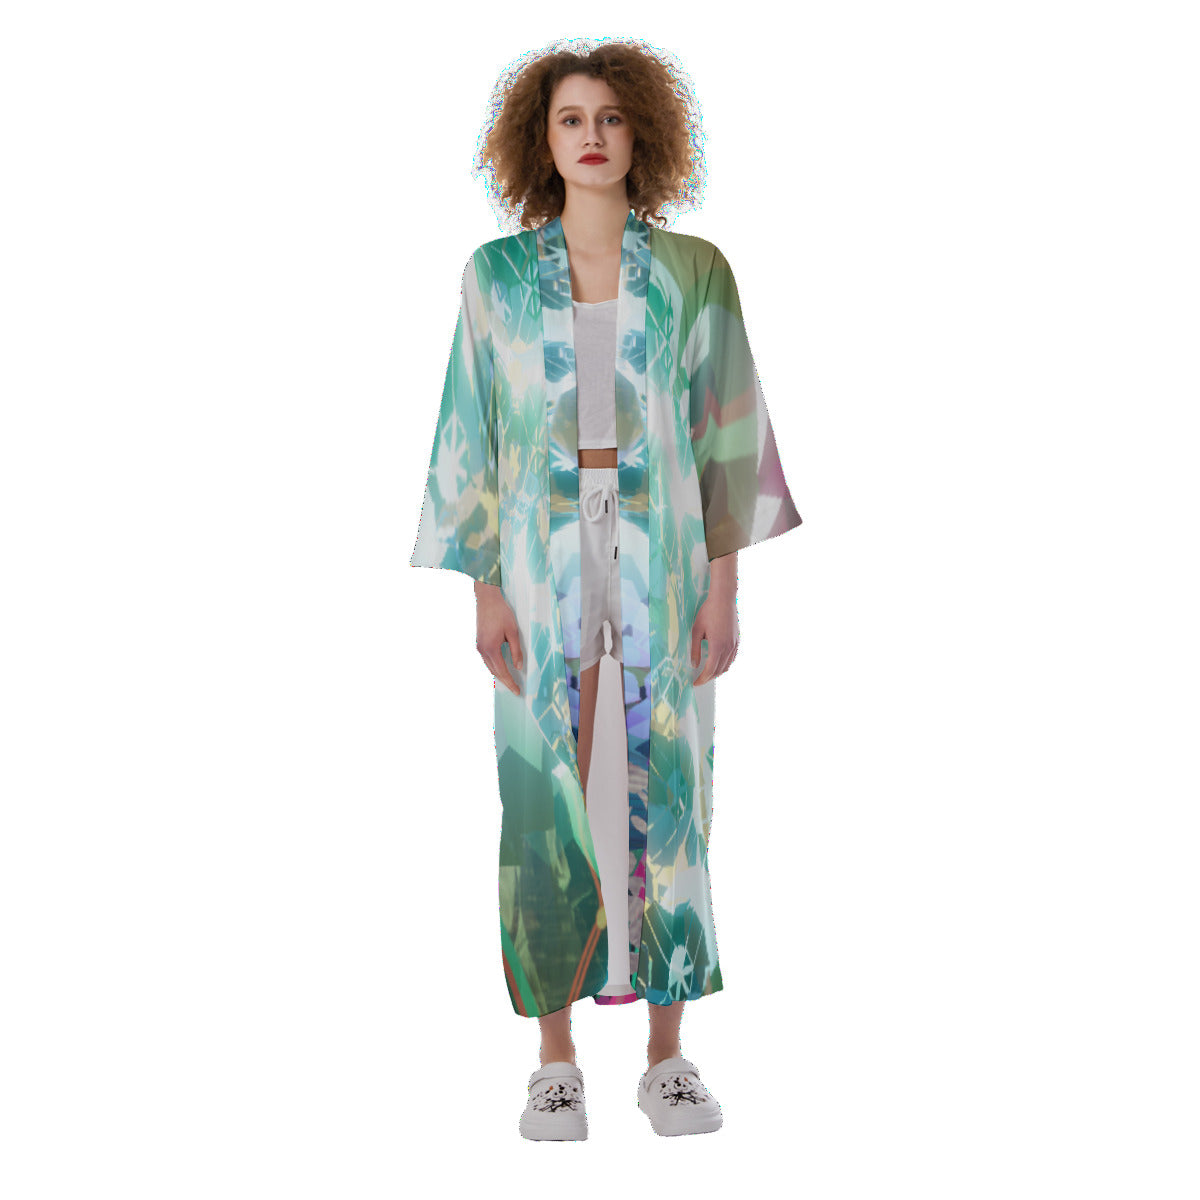 Psychedelic 3D Digital Art Print Women's Satin Kimono Long Robe